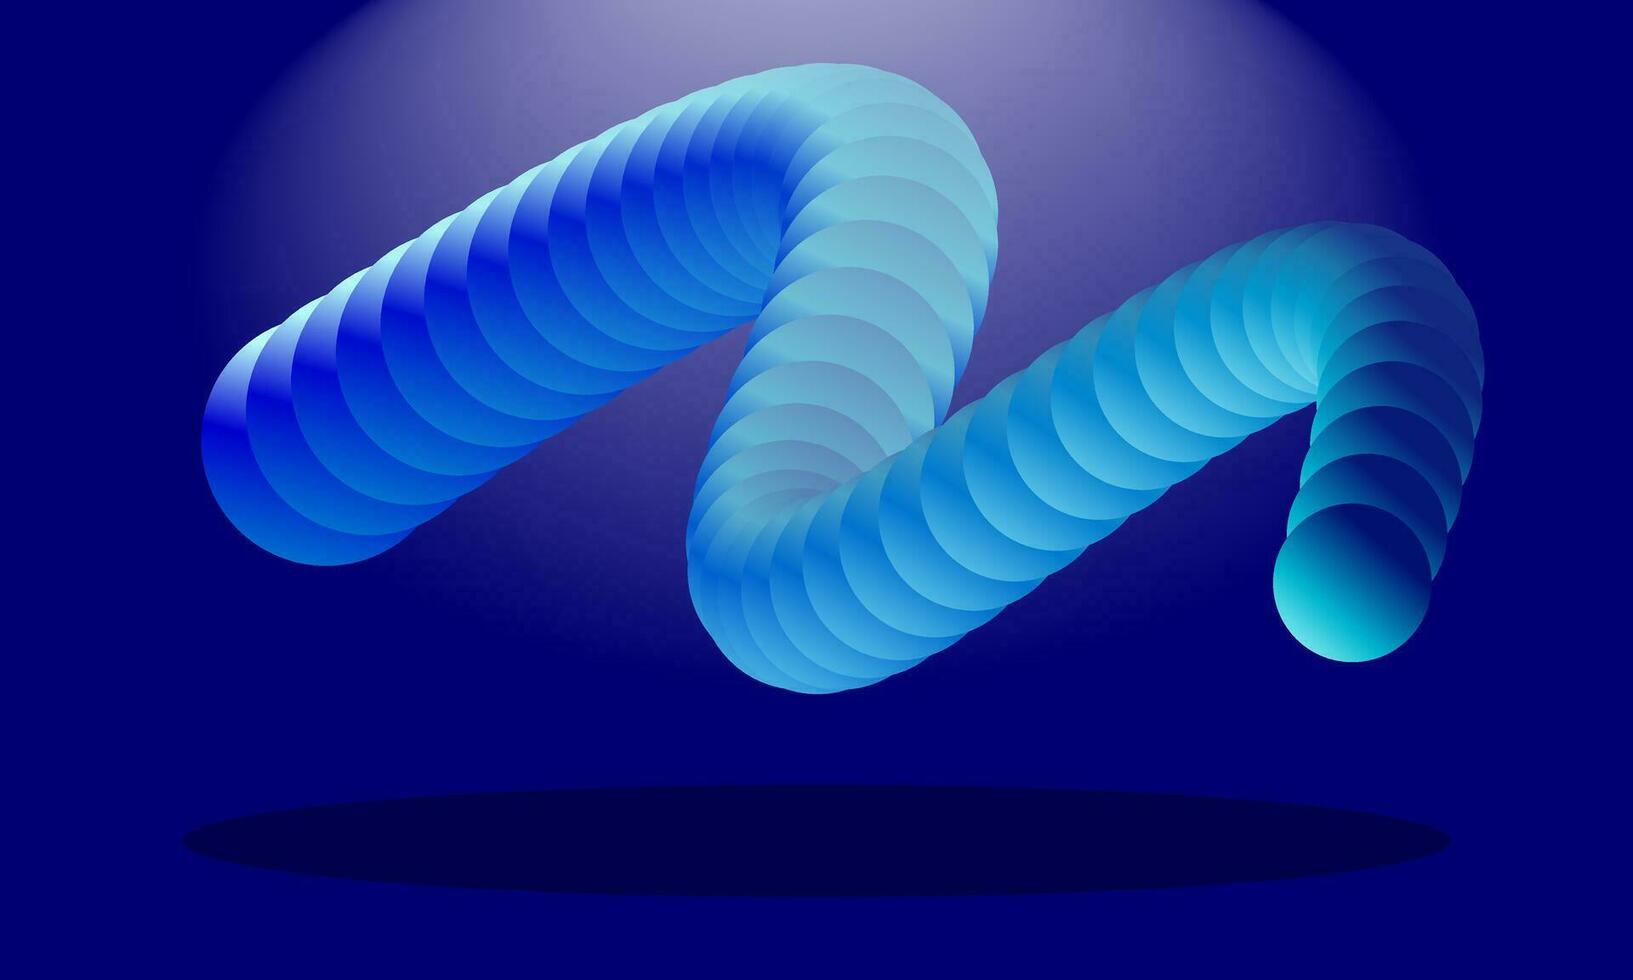 färgrik 3d flytande cirkel. abstrakt geometrisk former på mörk blå bakgrund. vektor